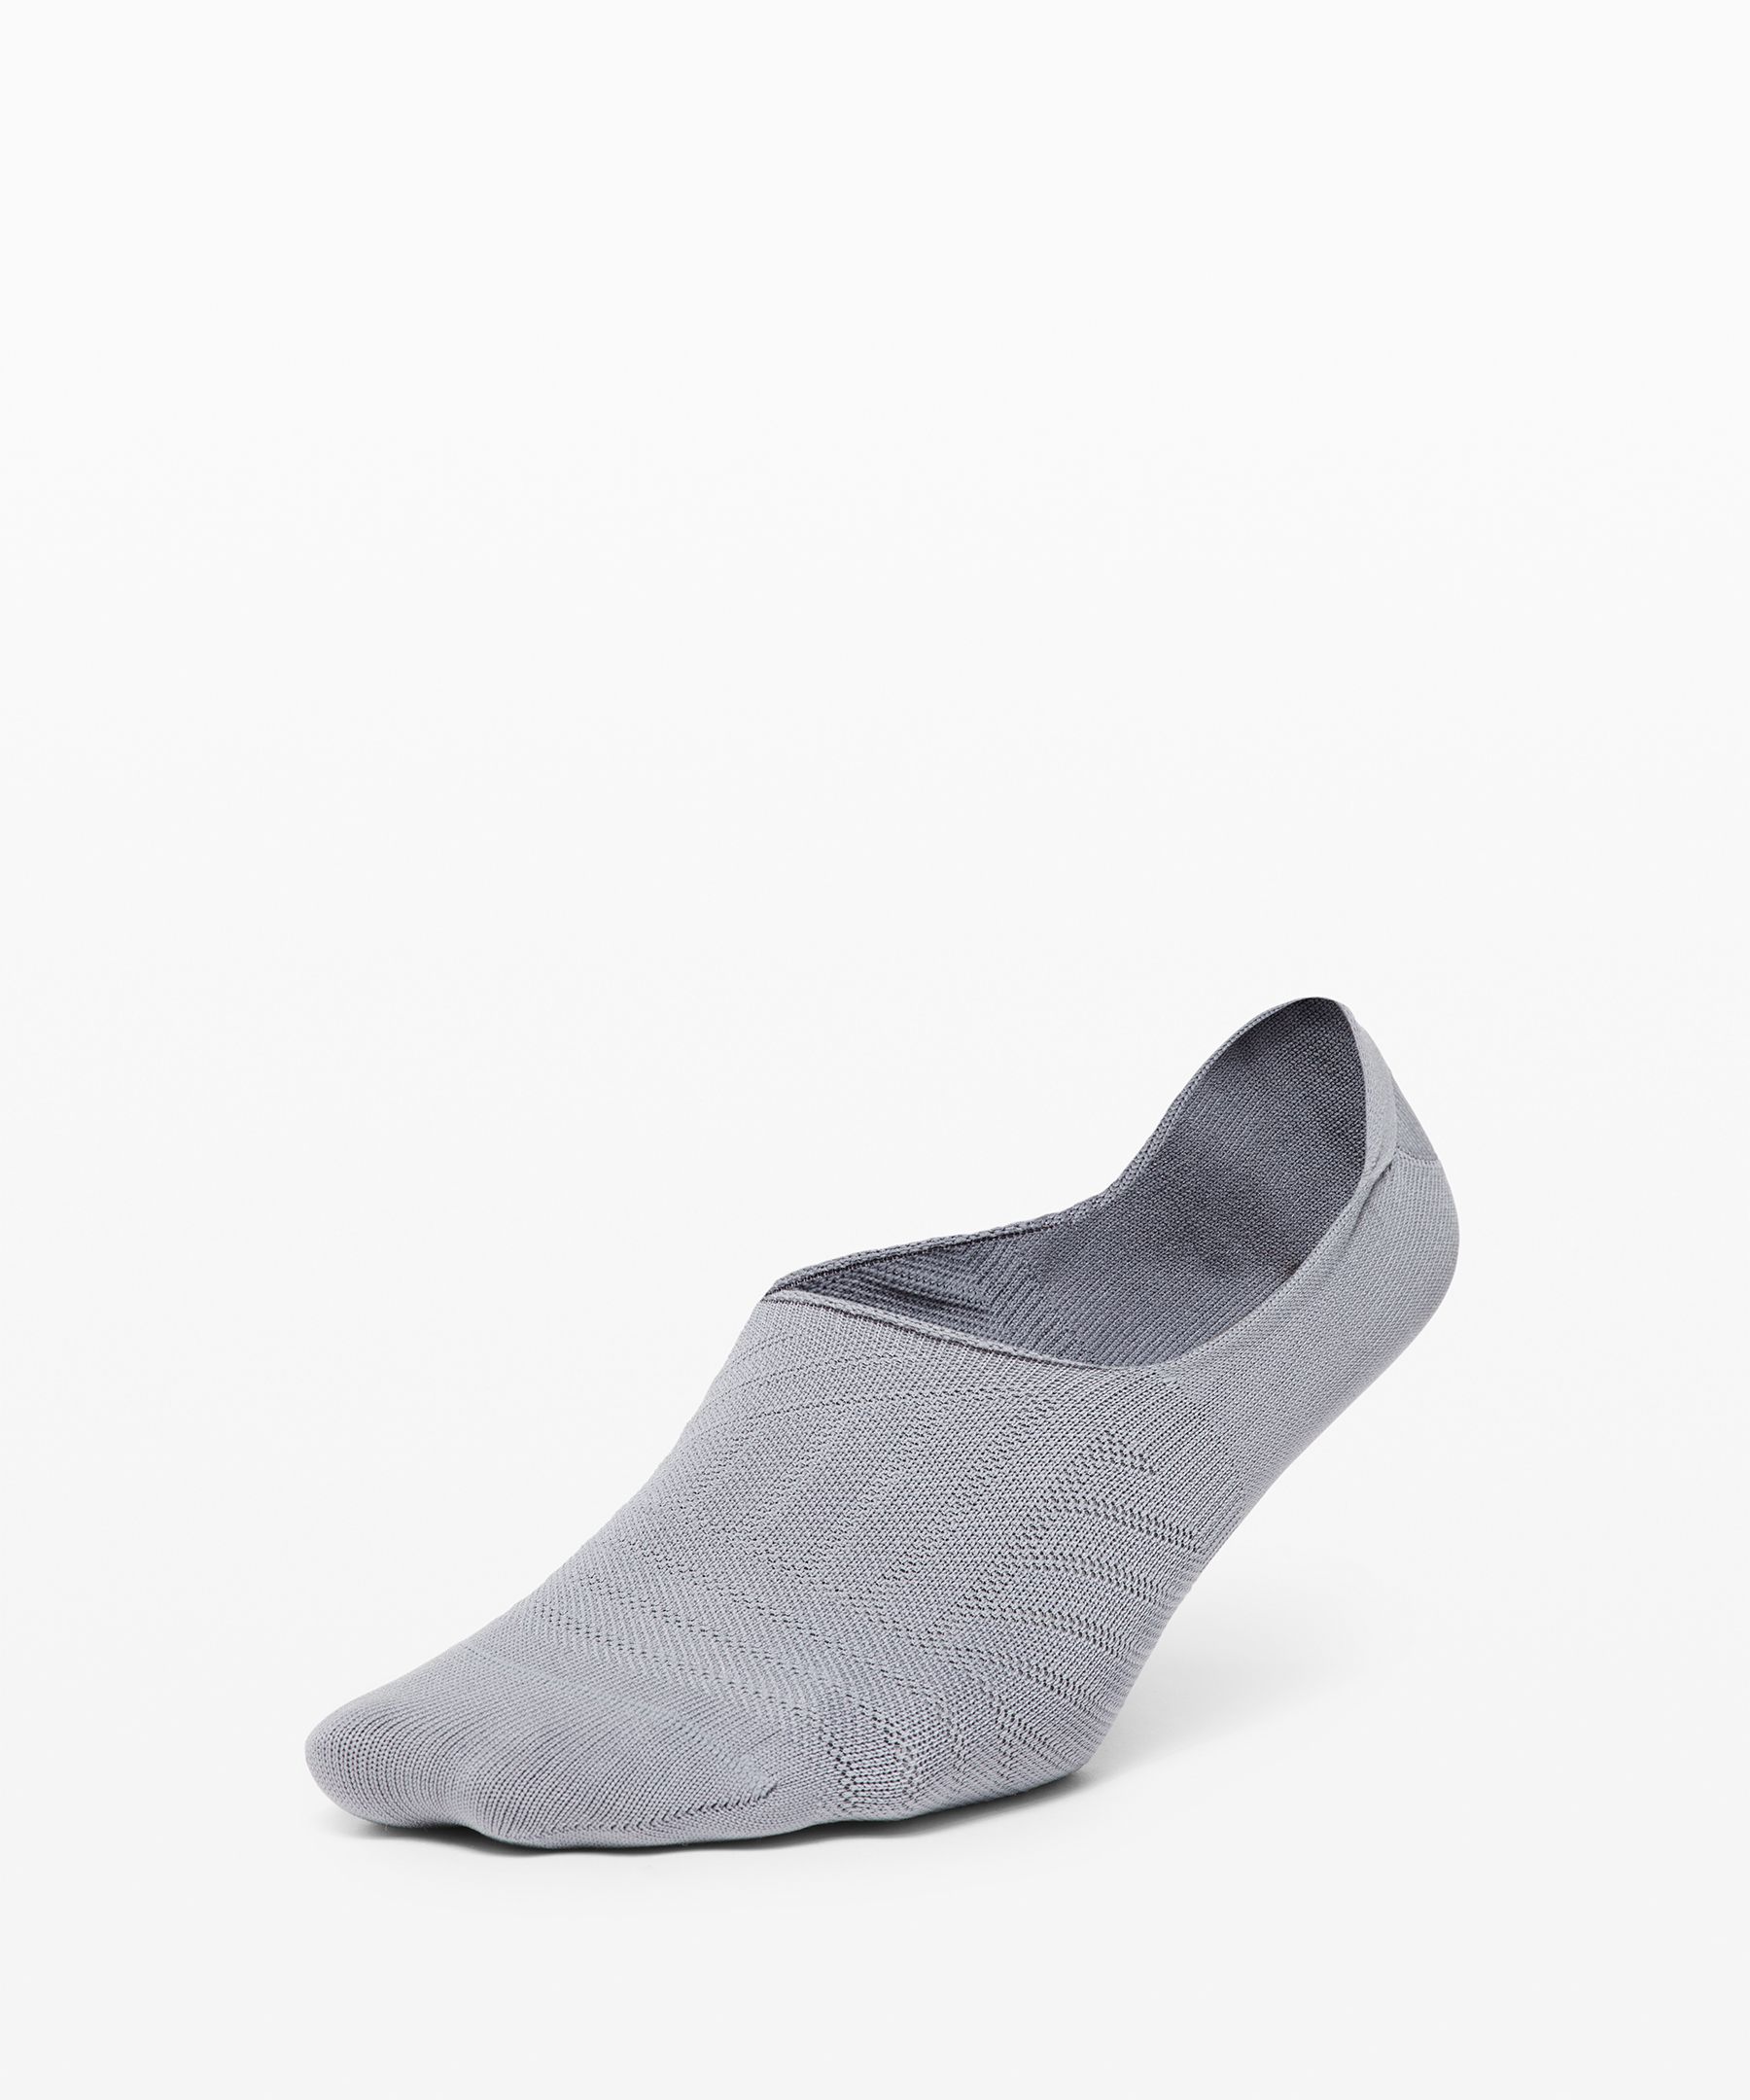 Lululemon Secret Sock In Gray